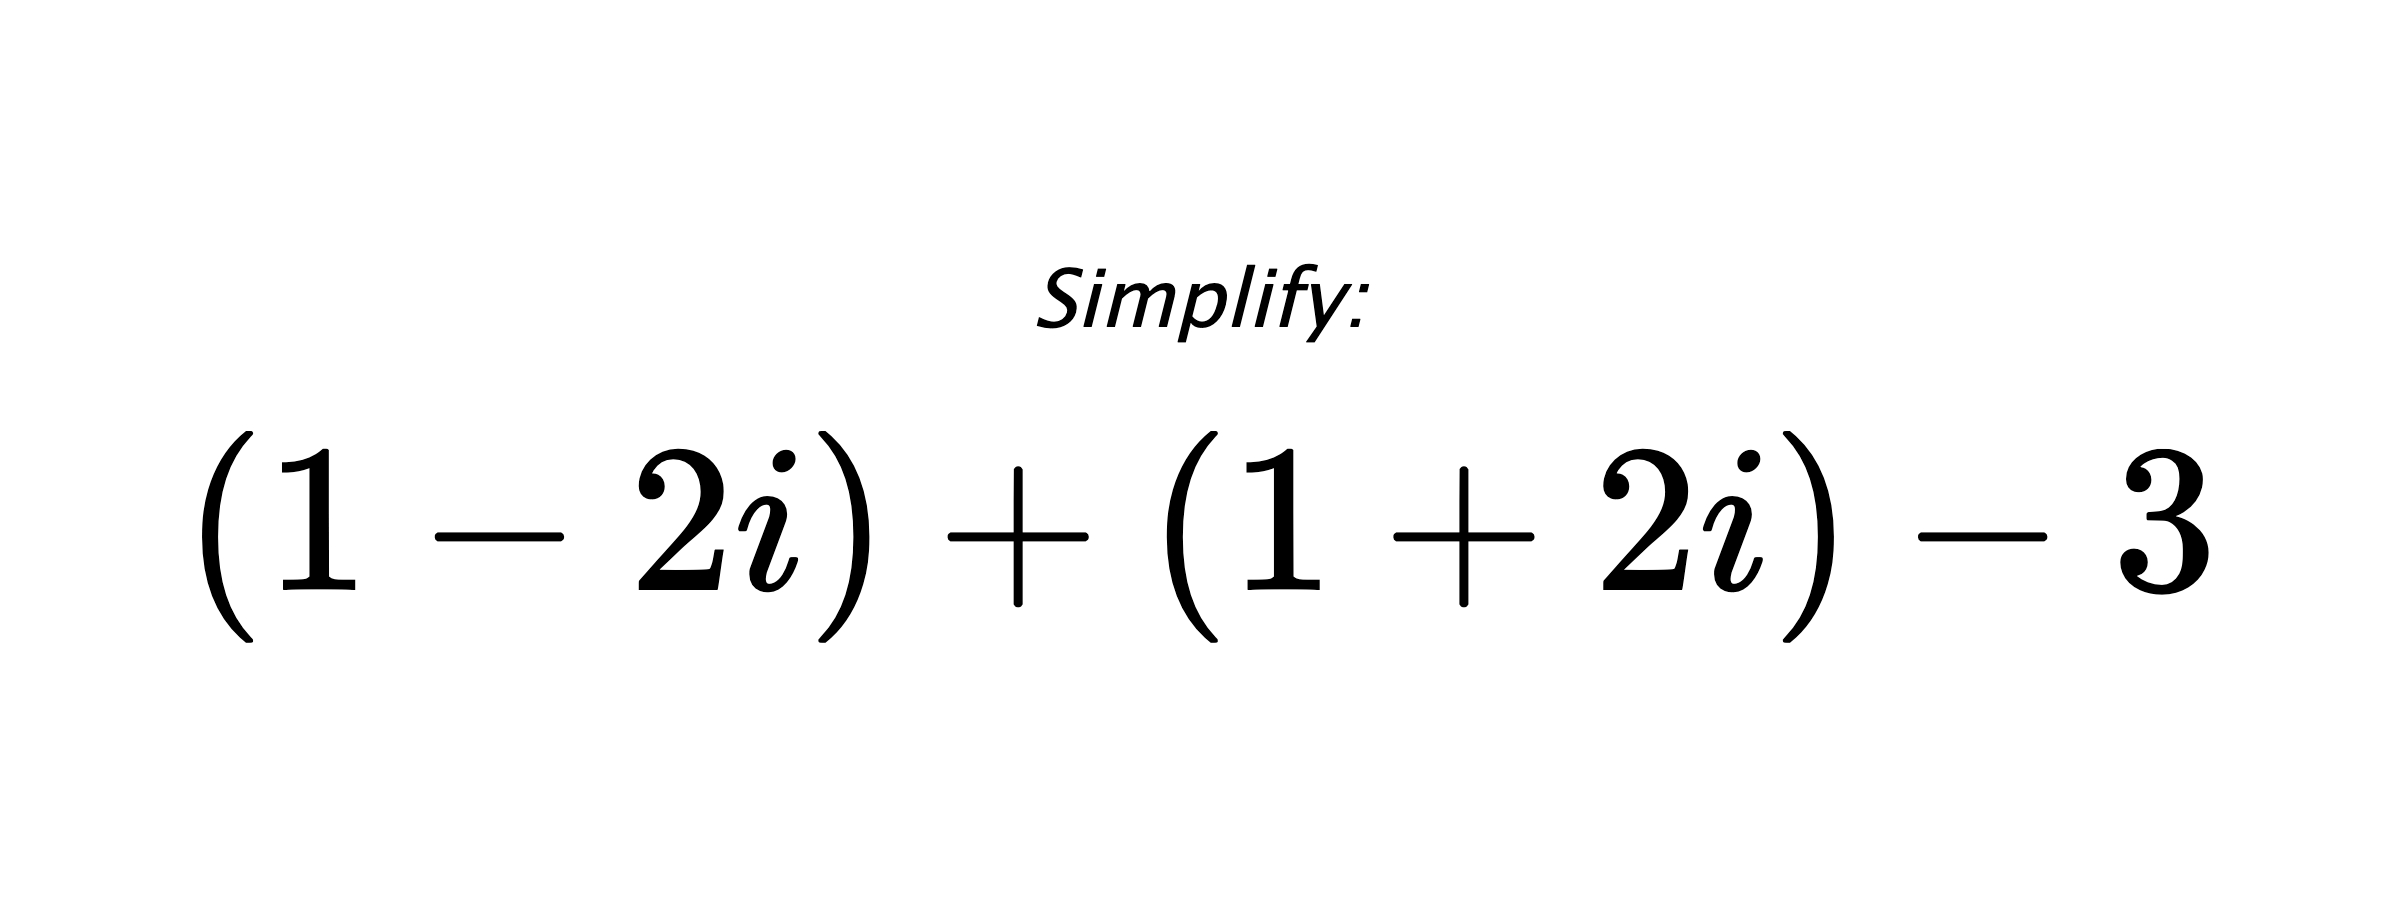 Simplify: $ (1-2i)+(1+2i)-3 $